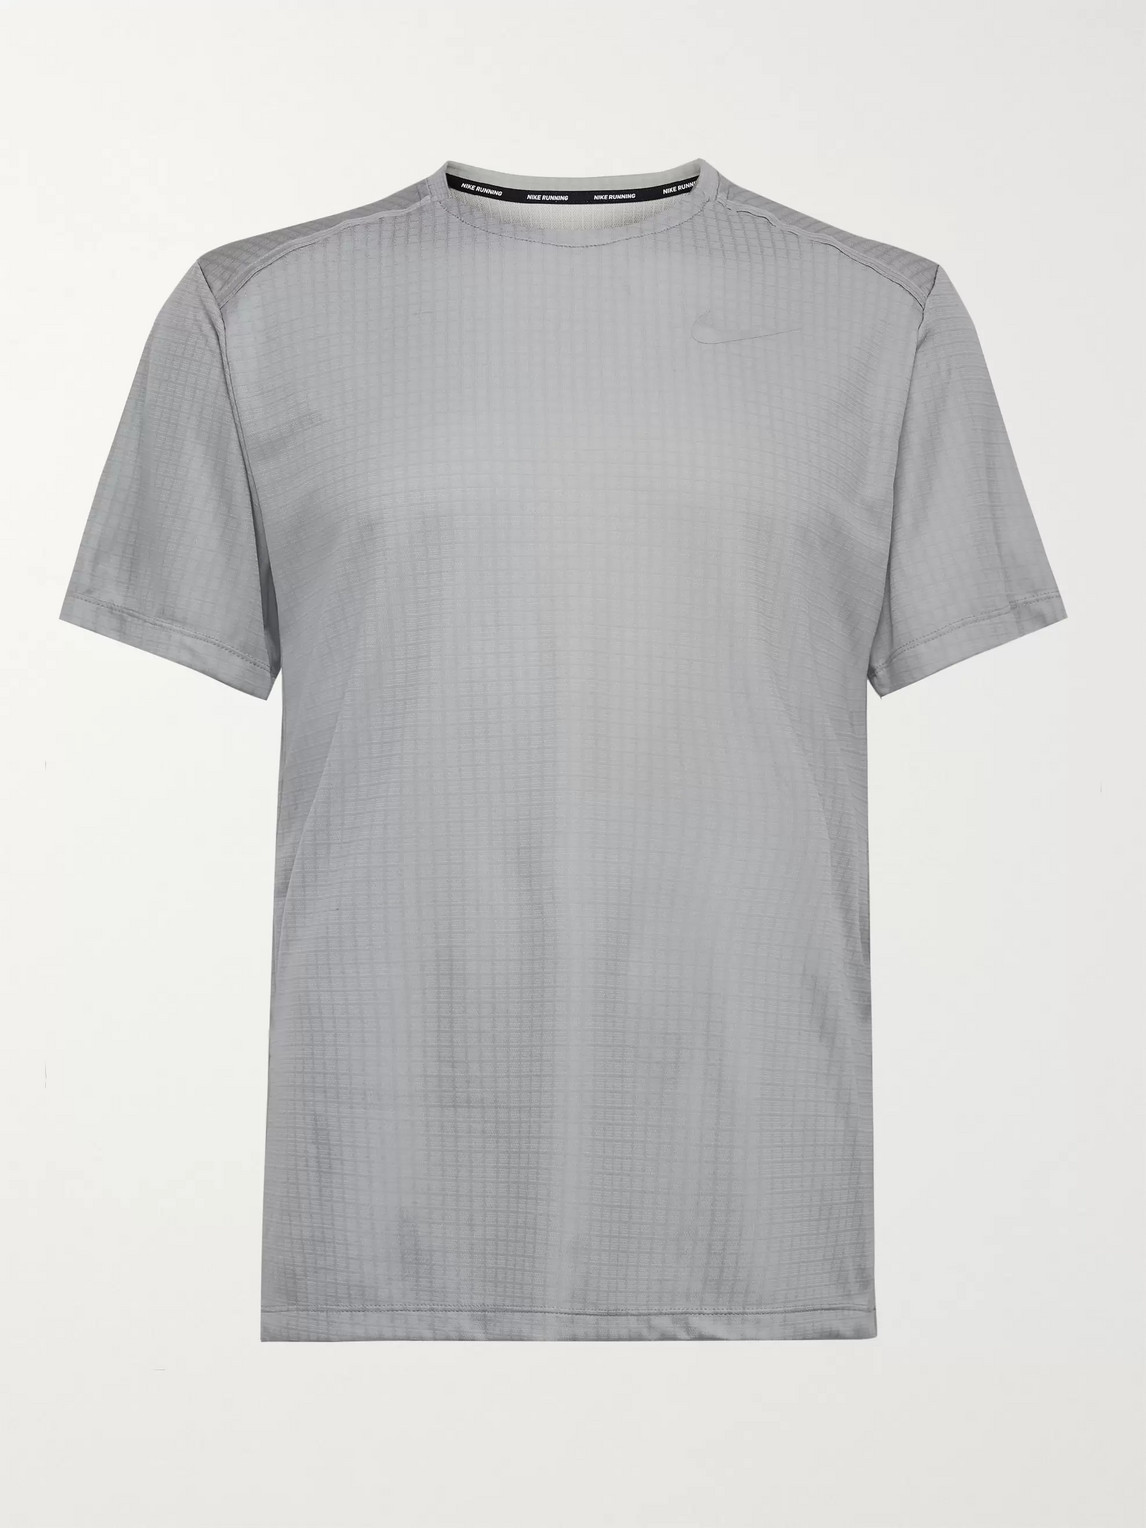 Nike Miler Dri-fit Ripstop T-shirt In Grey